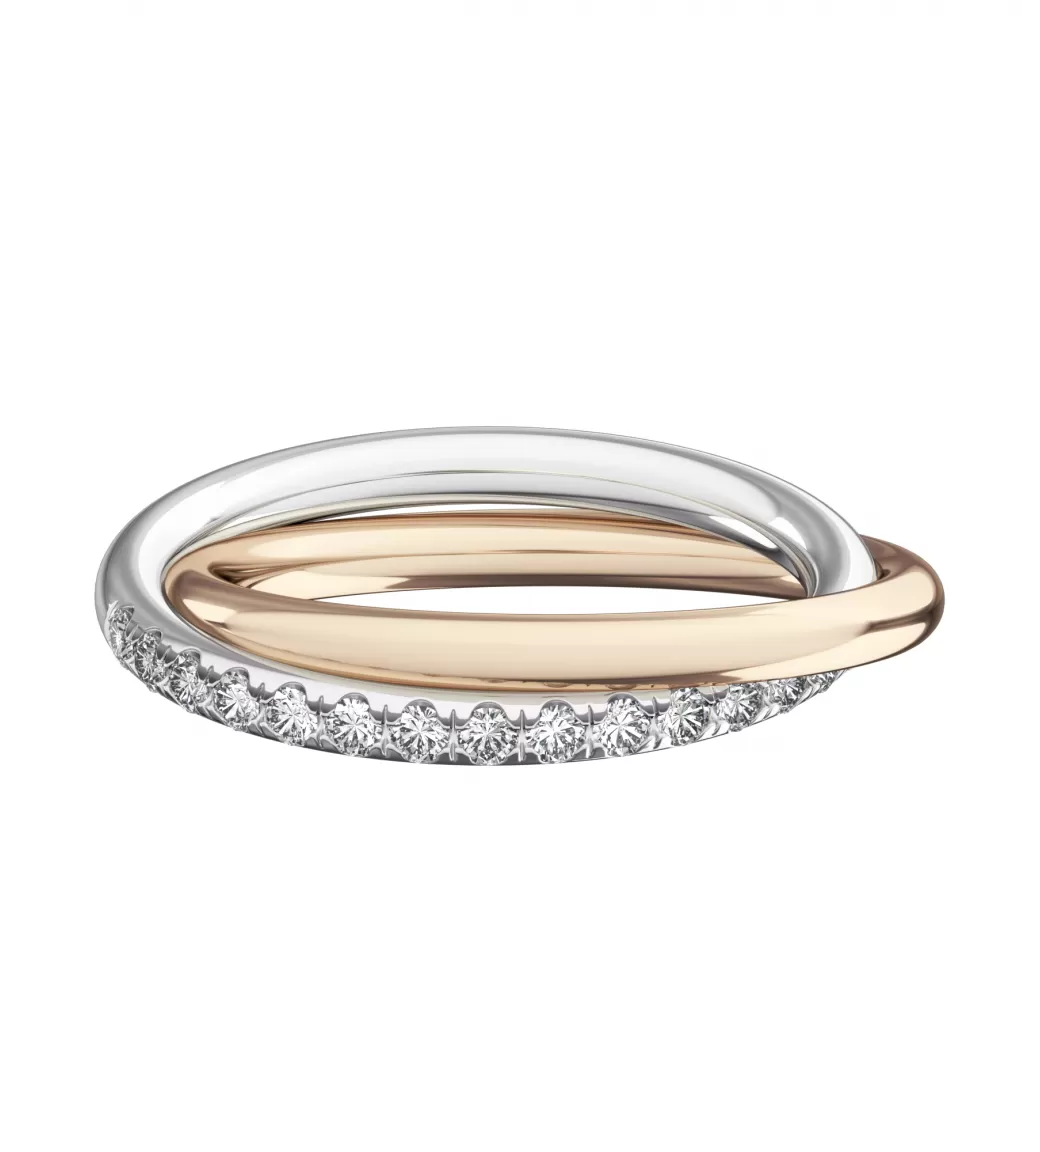 Общая ширина 4,8 мм, бриллианты огранки "круг" 1,5 мм. Белое и розовое золото.